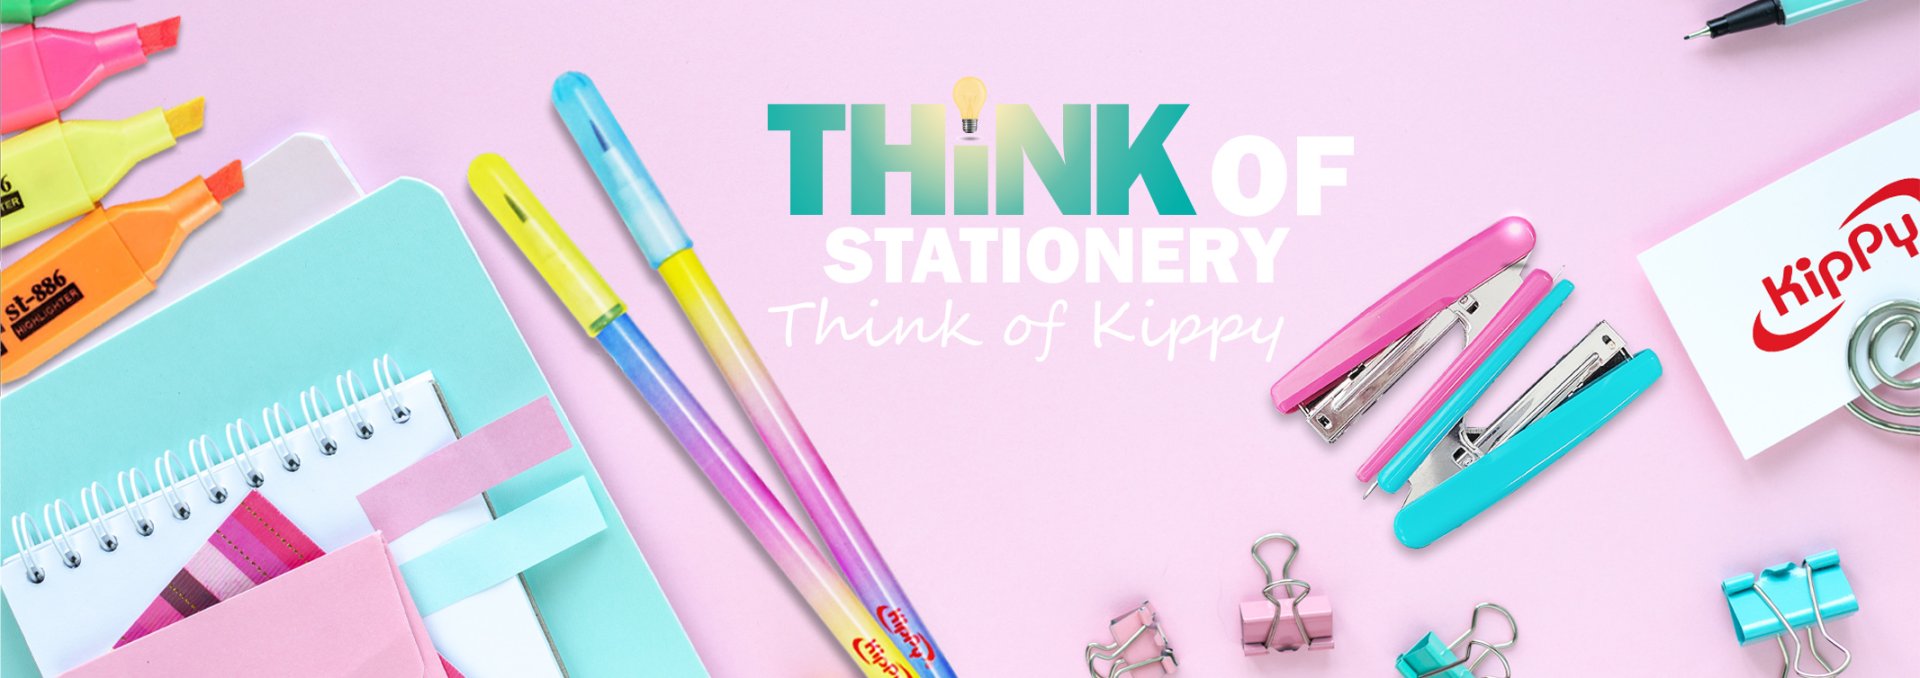 Kippy stationery